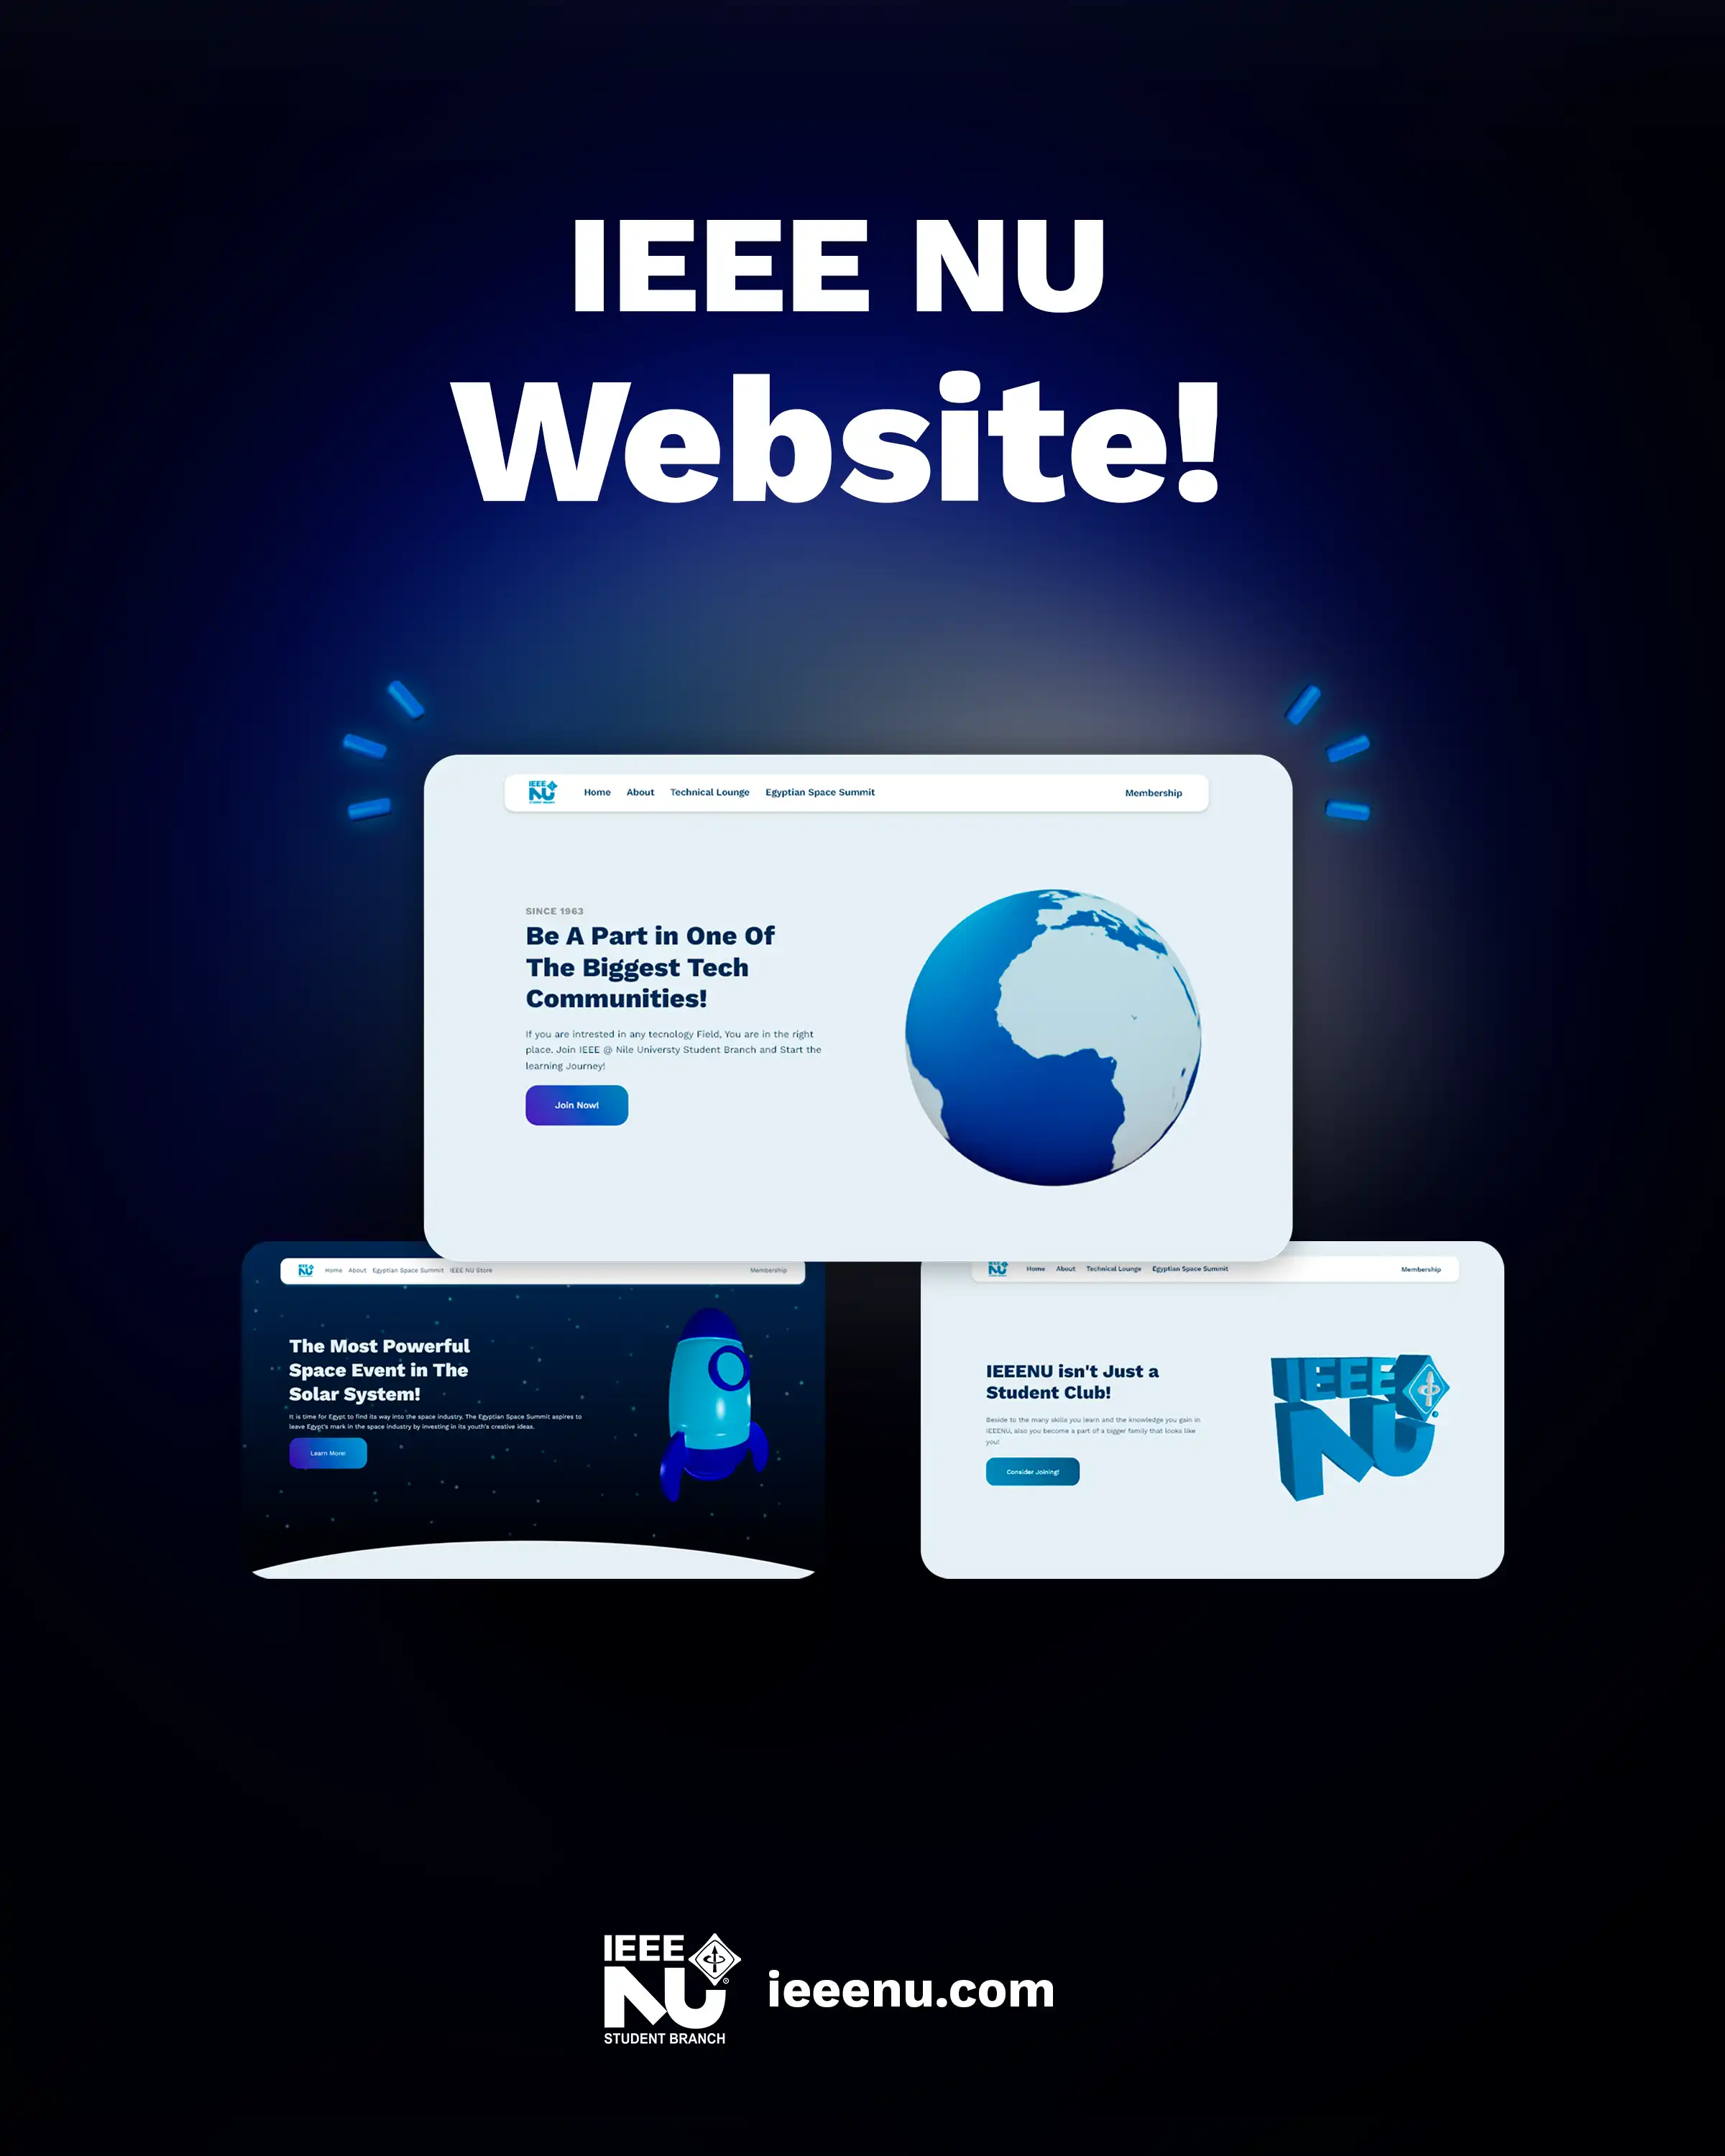 IEEE Website Launch